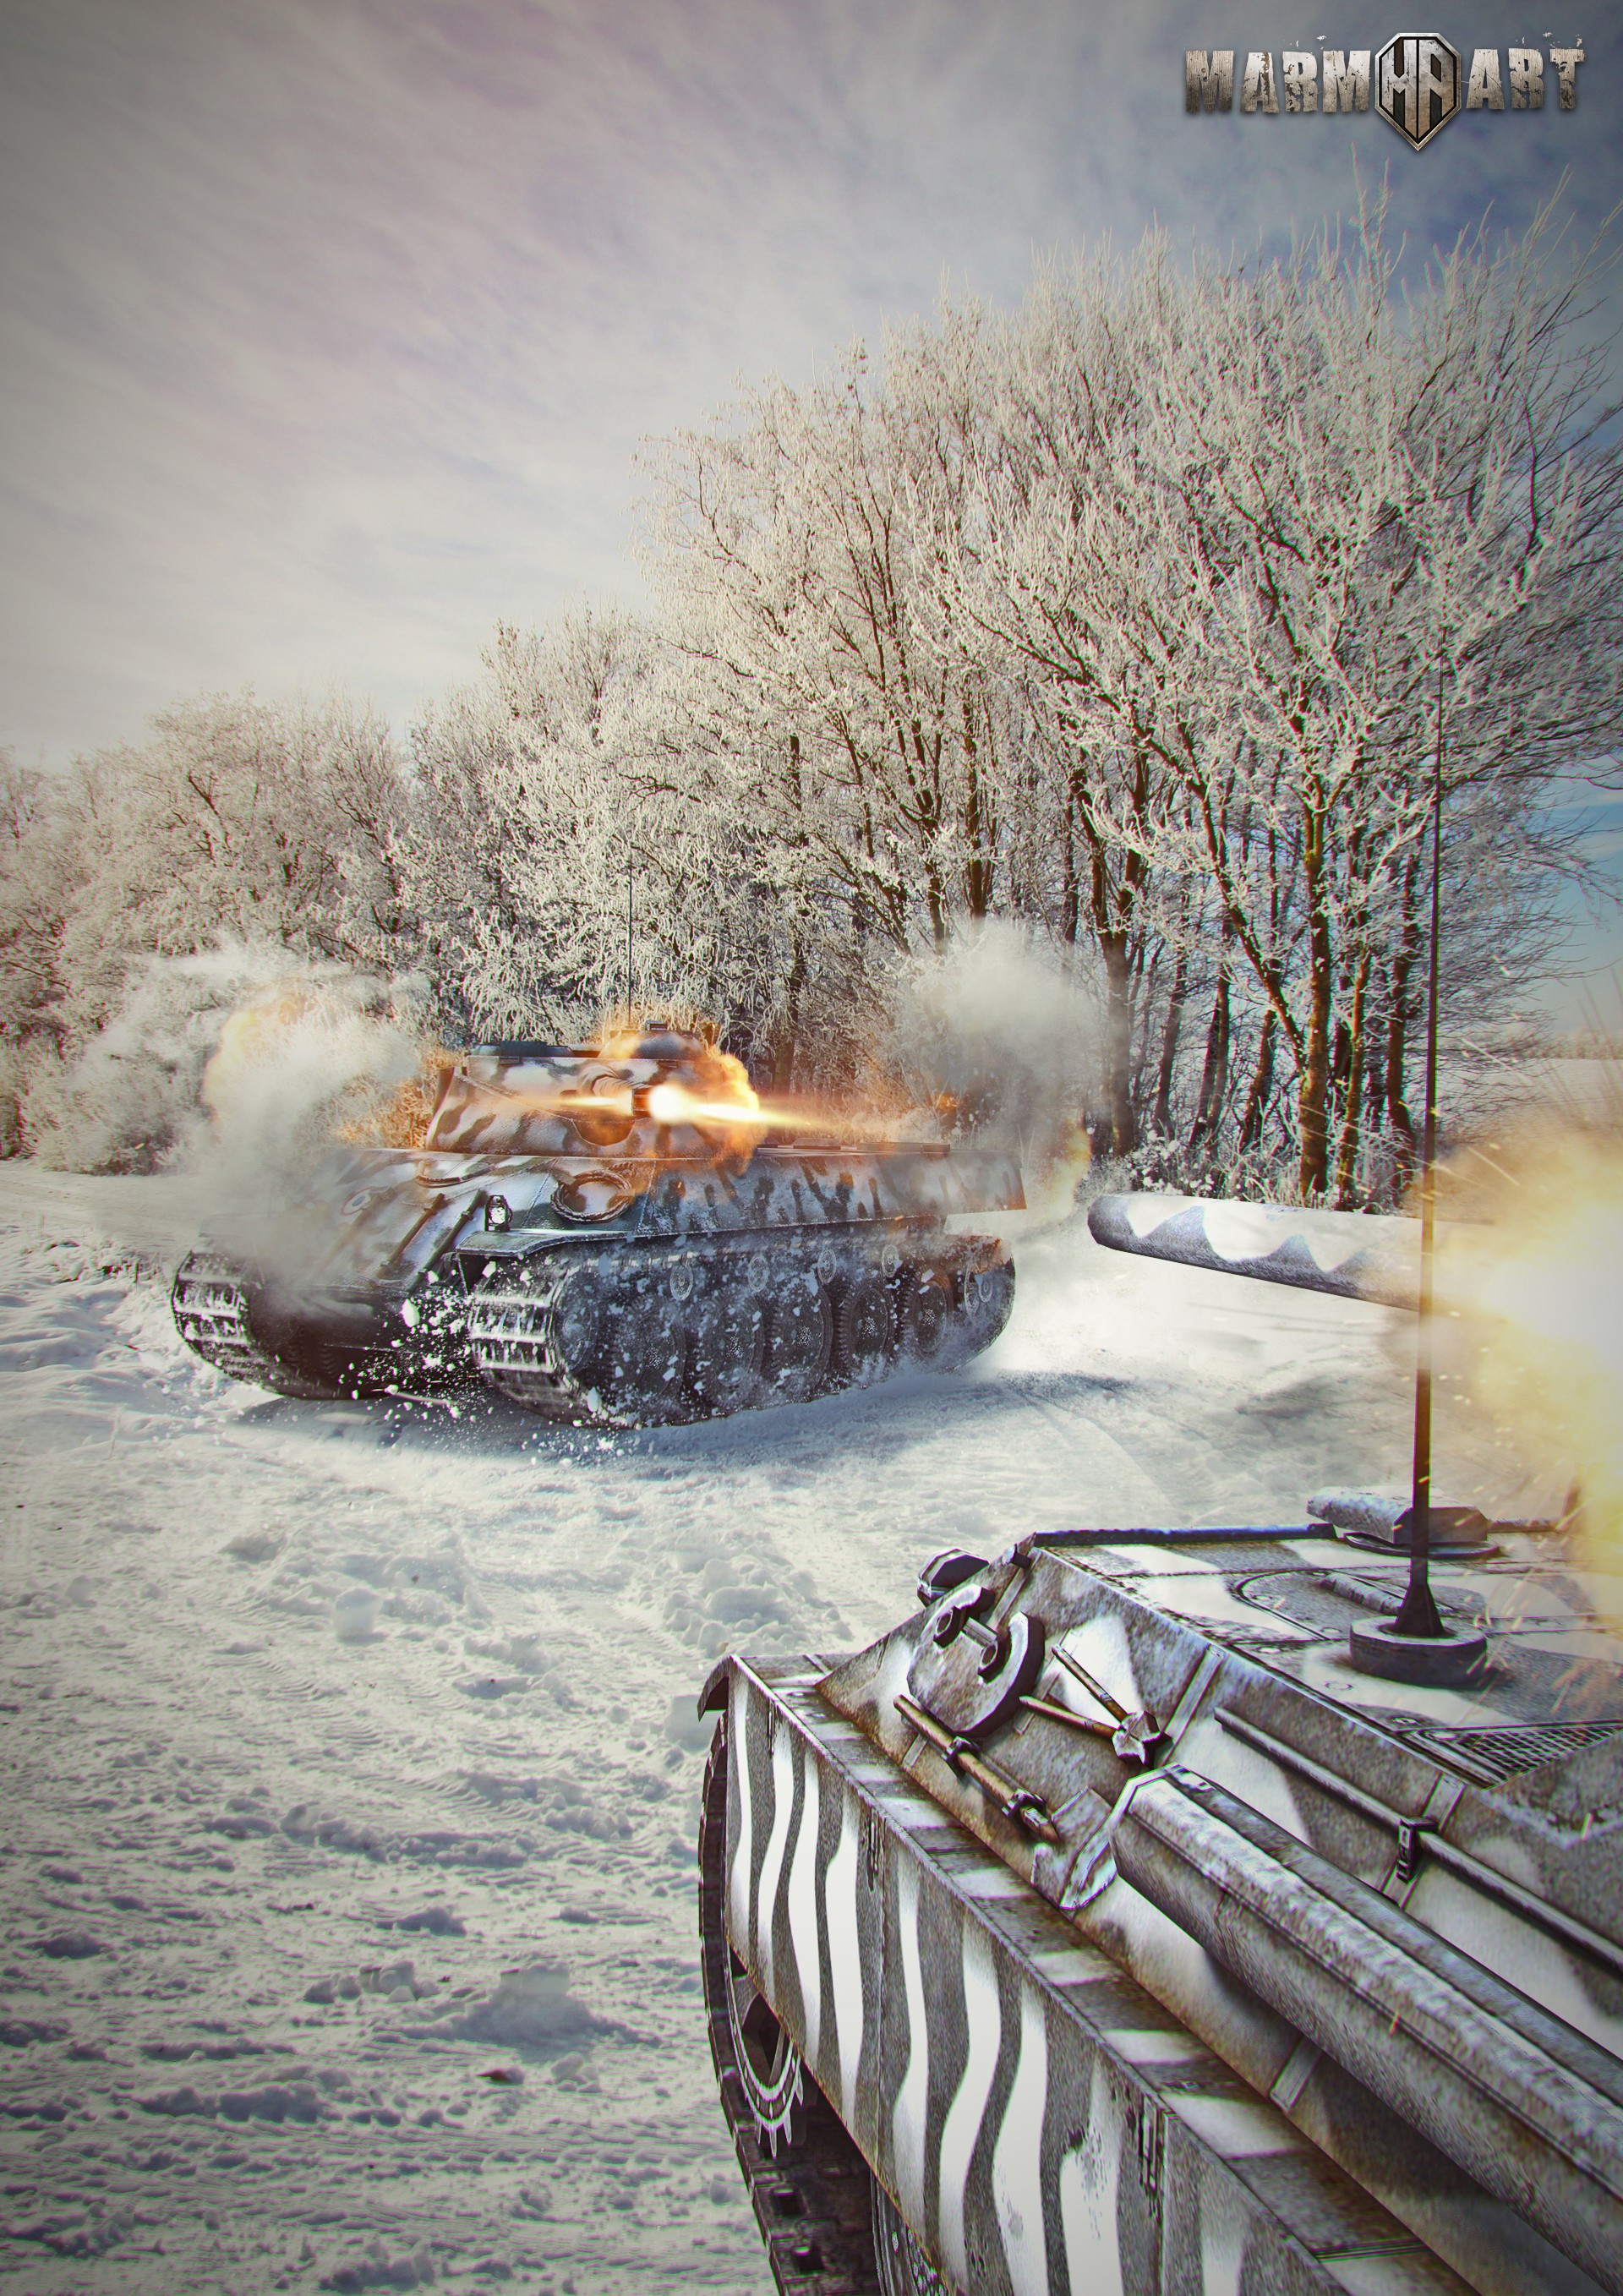 World Of Tanks, Wargaming, Video Games Wallpaper